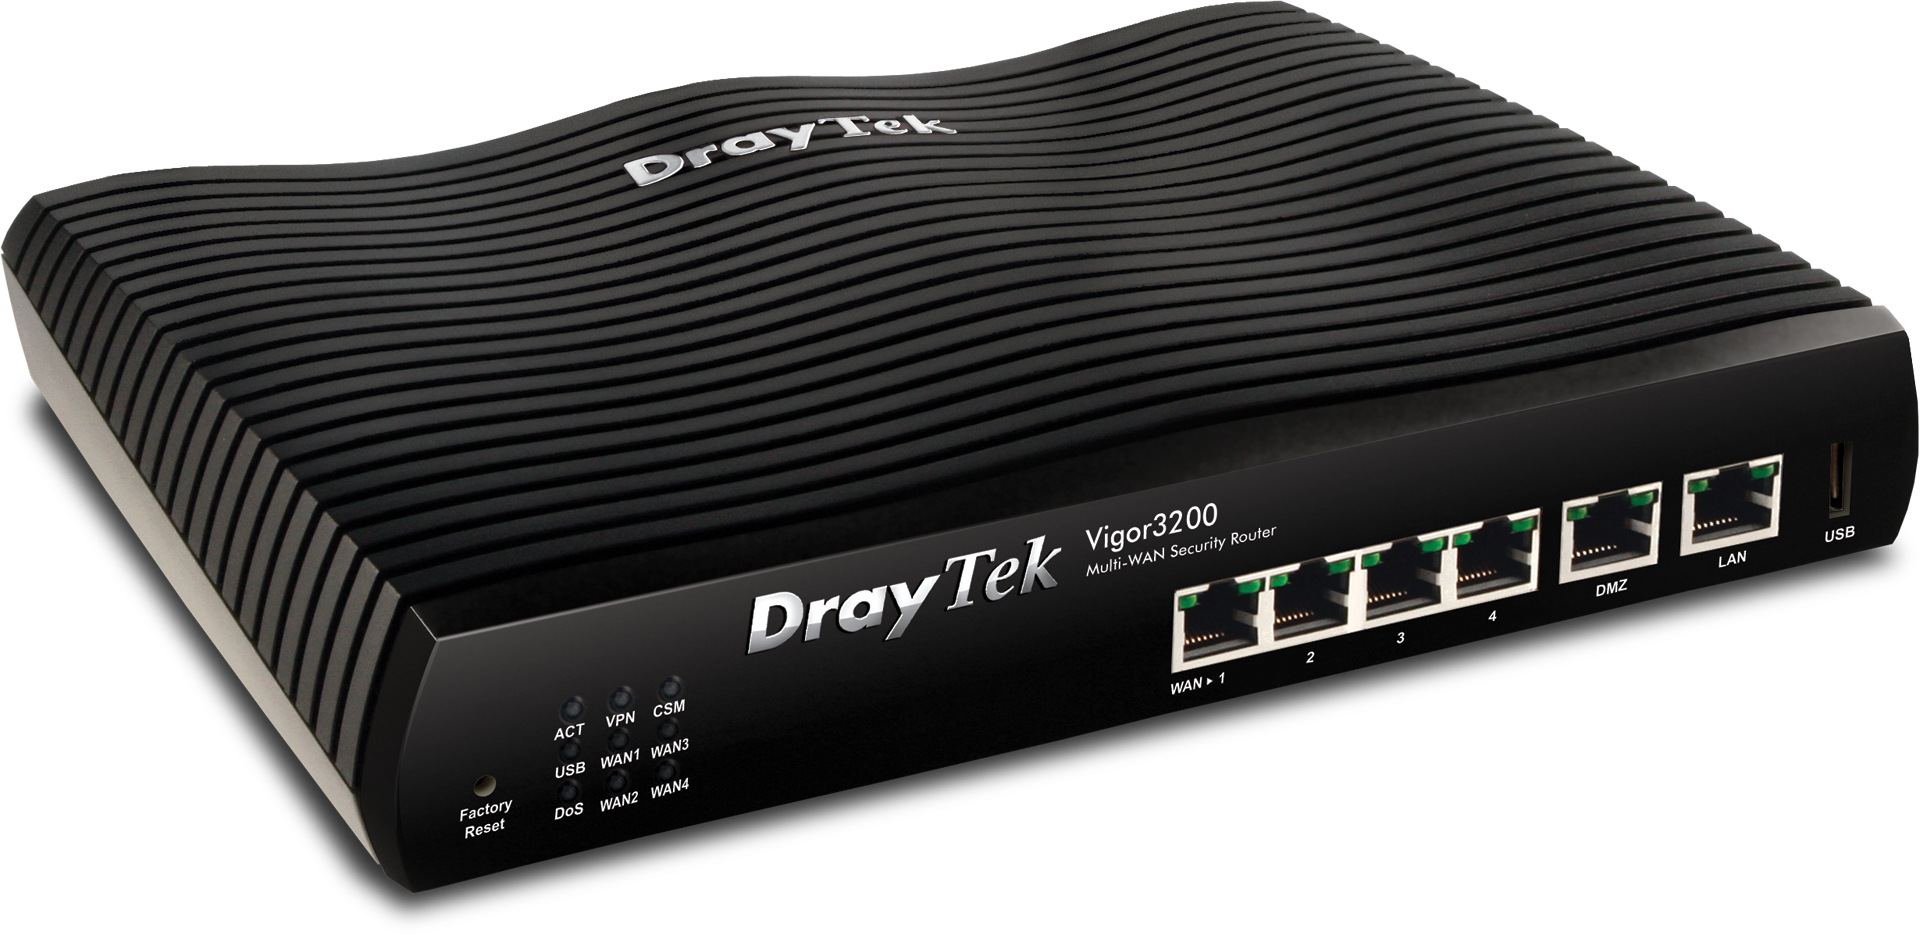 Router Draytek Vigor 3200